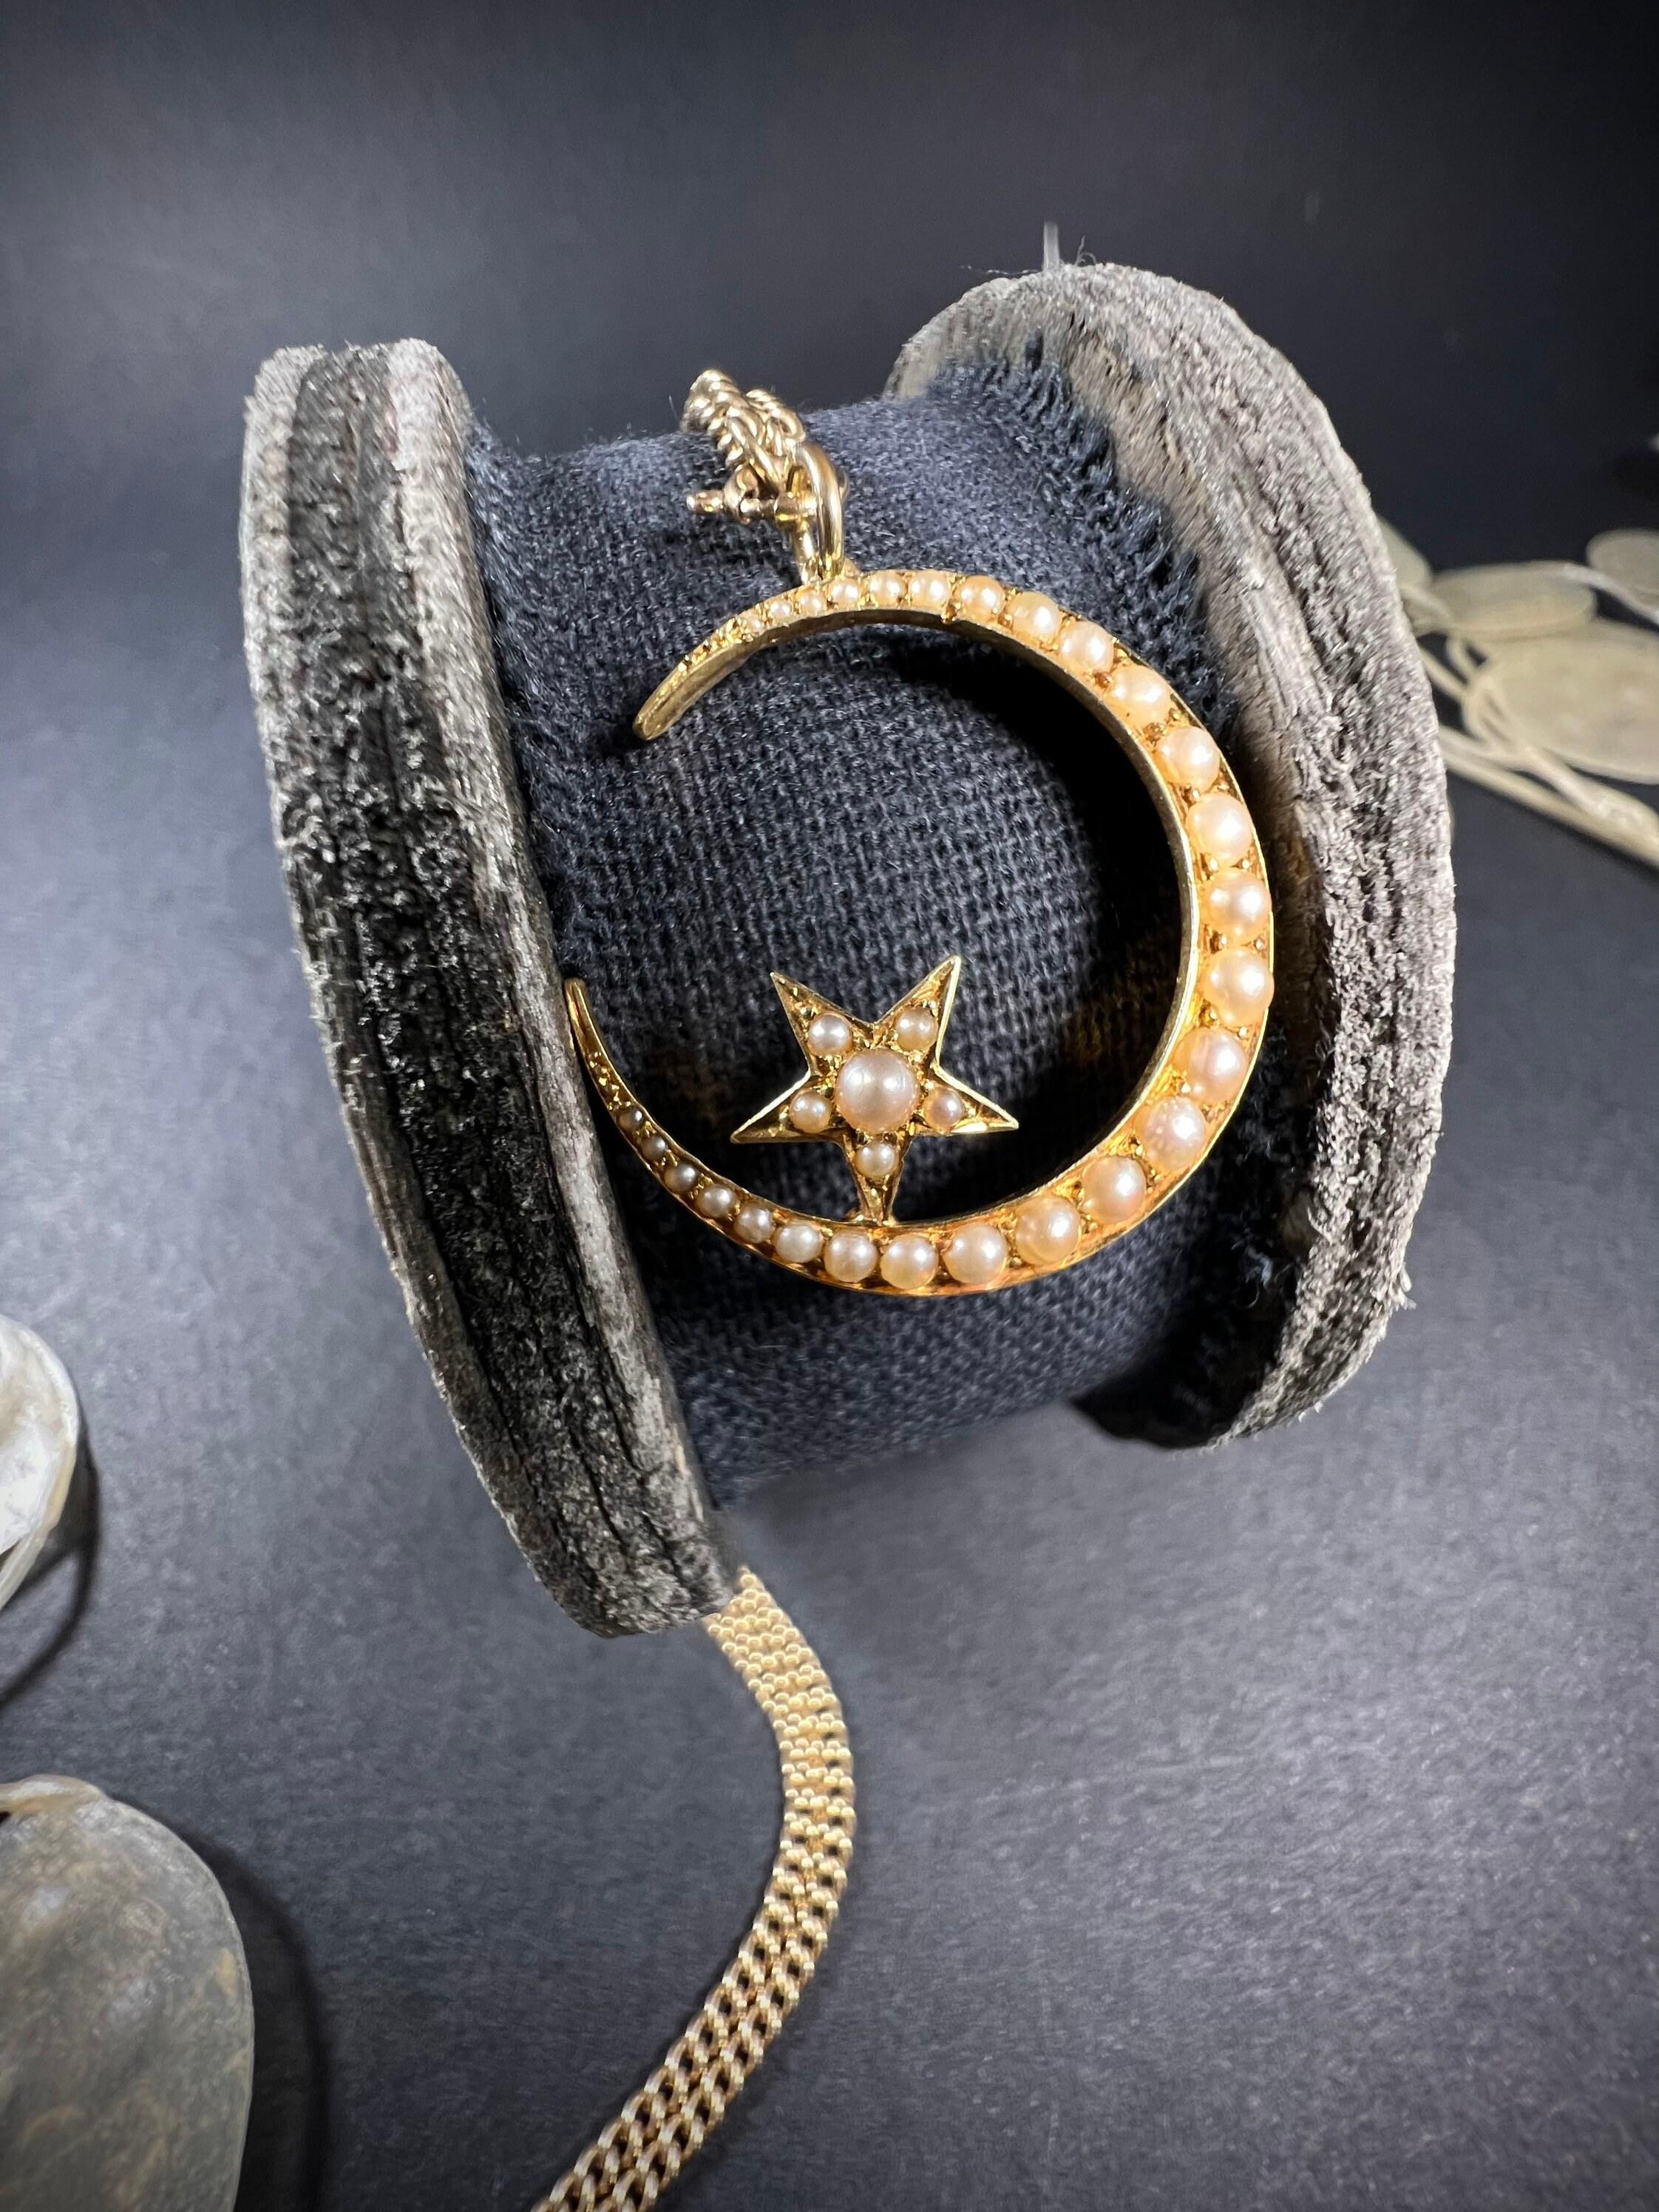 Pendentif croissant antique 

Or 15 carats 

Circa 1900

Superbe pendentif édouardien en forme de croissant de lune. 
Serti de magnifiques perles naturelles graduées et d'une jolie petite étoile sertie de perles.  

Mesure environ 24,8 mm de hauteur